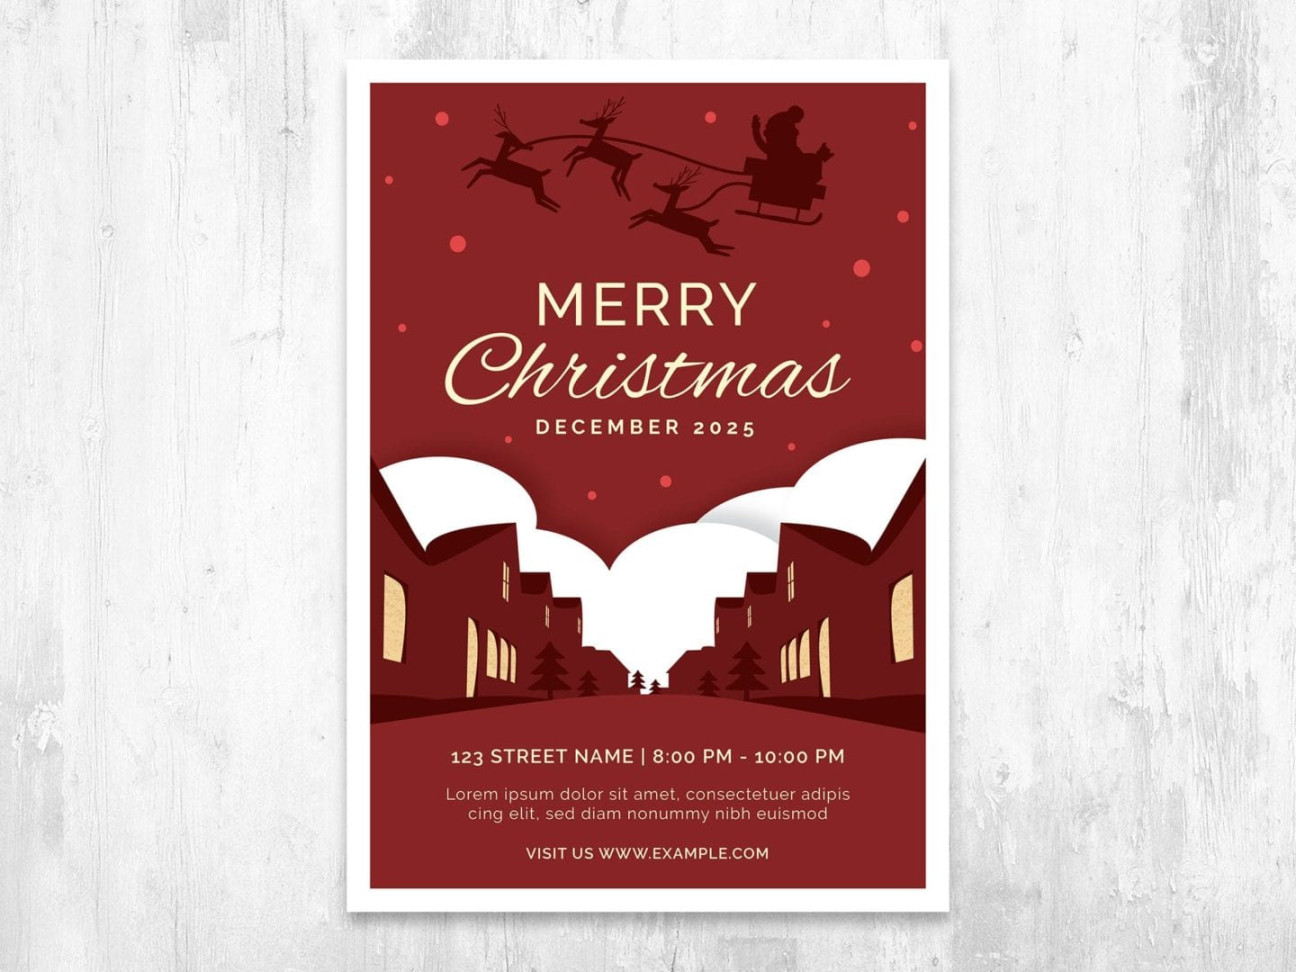 Christmas Card Templates - Adobe Illustrator, Vector, EPS - BrandPacks